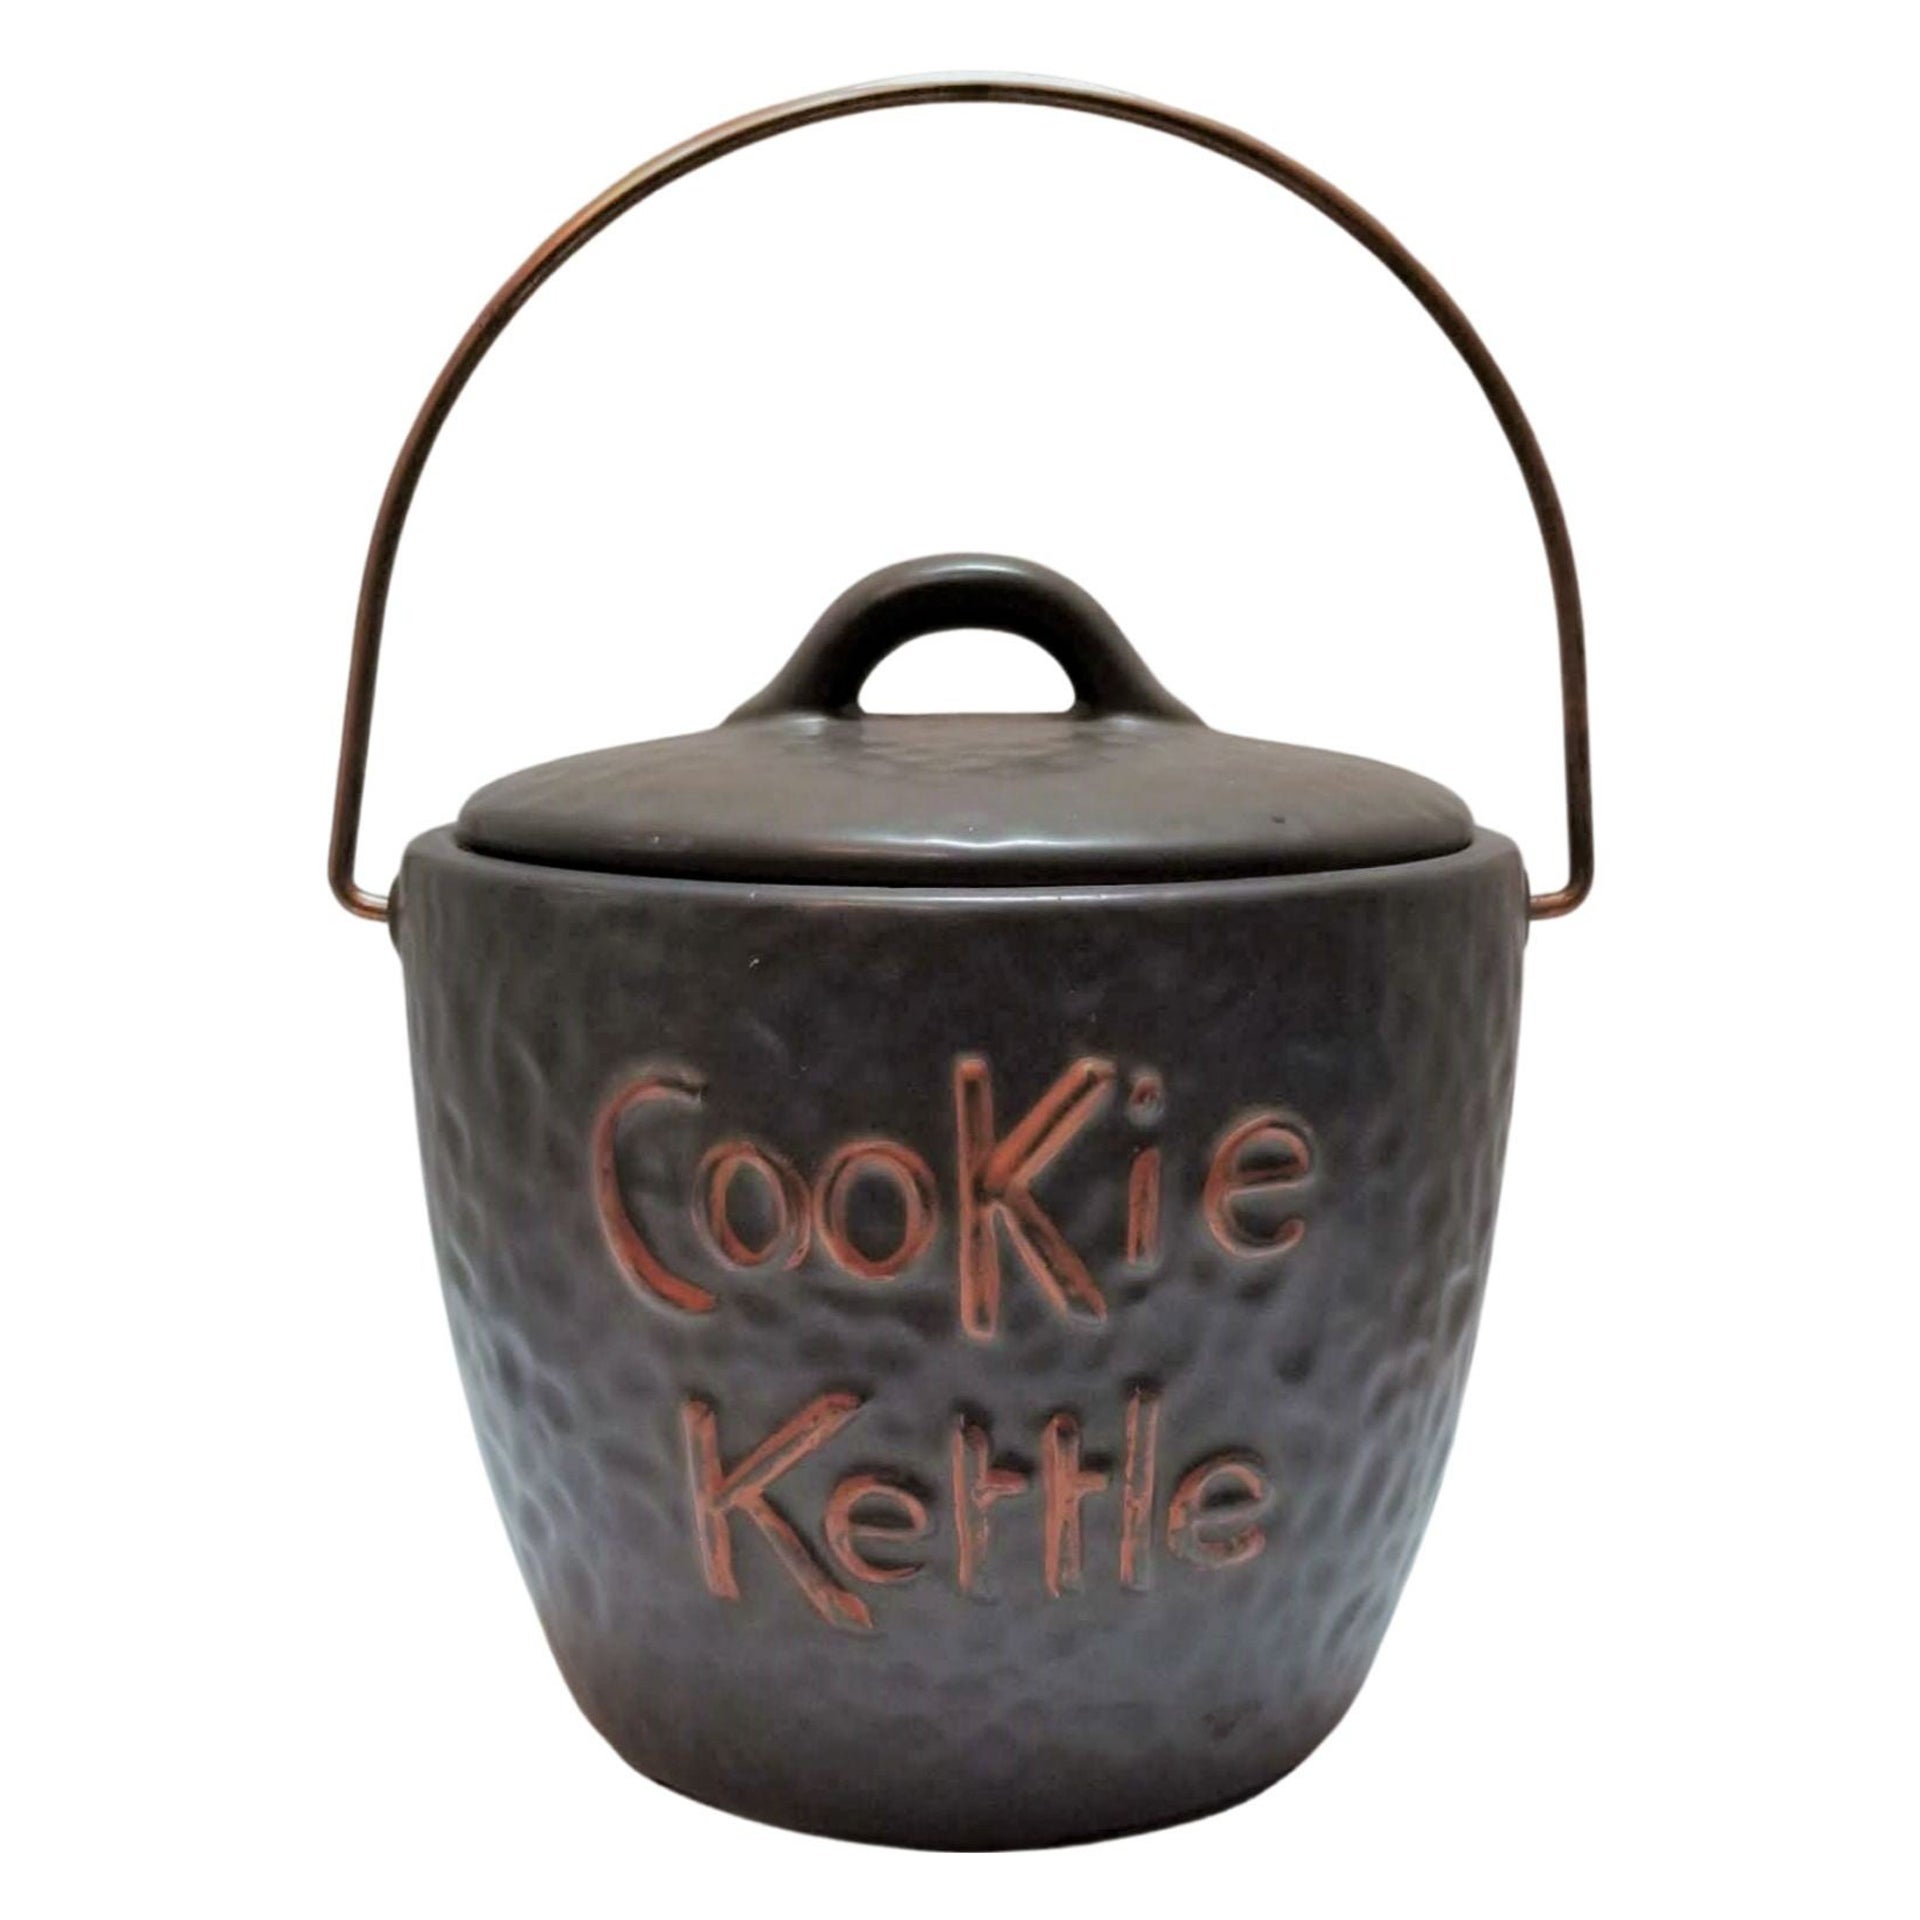 Midcentury Cookie Jar "Cookie Kettle" with Top Handle